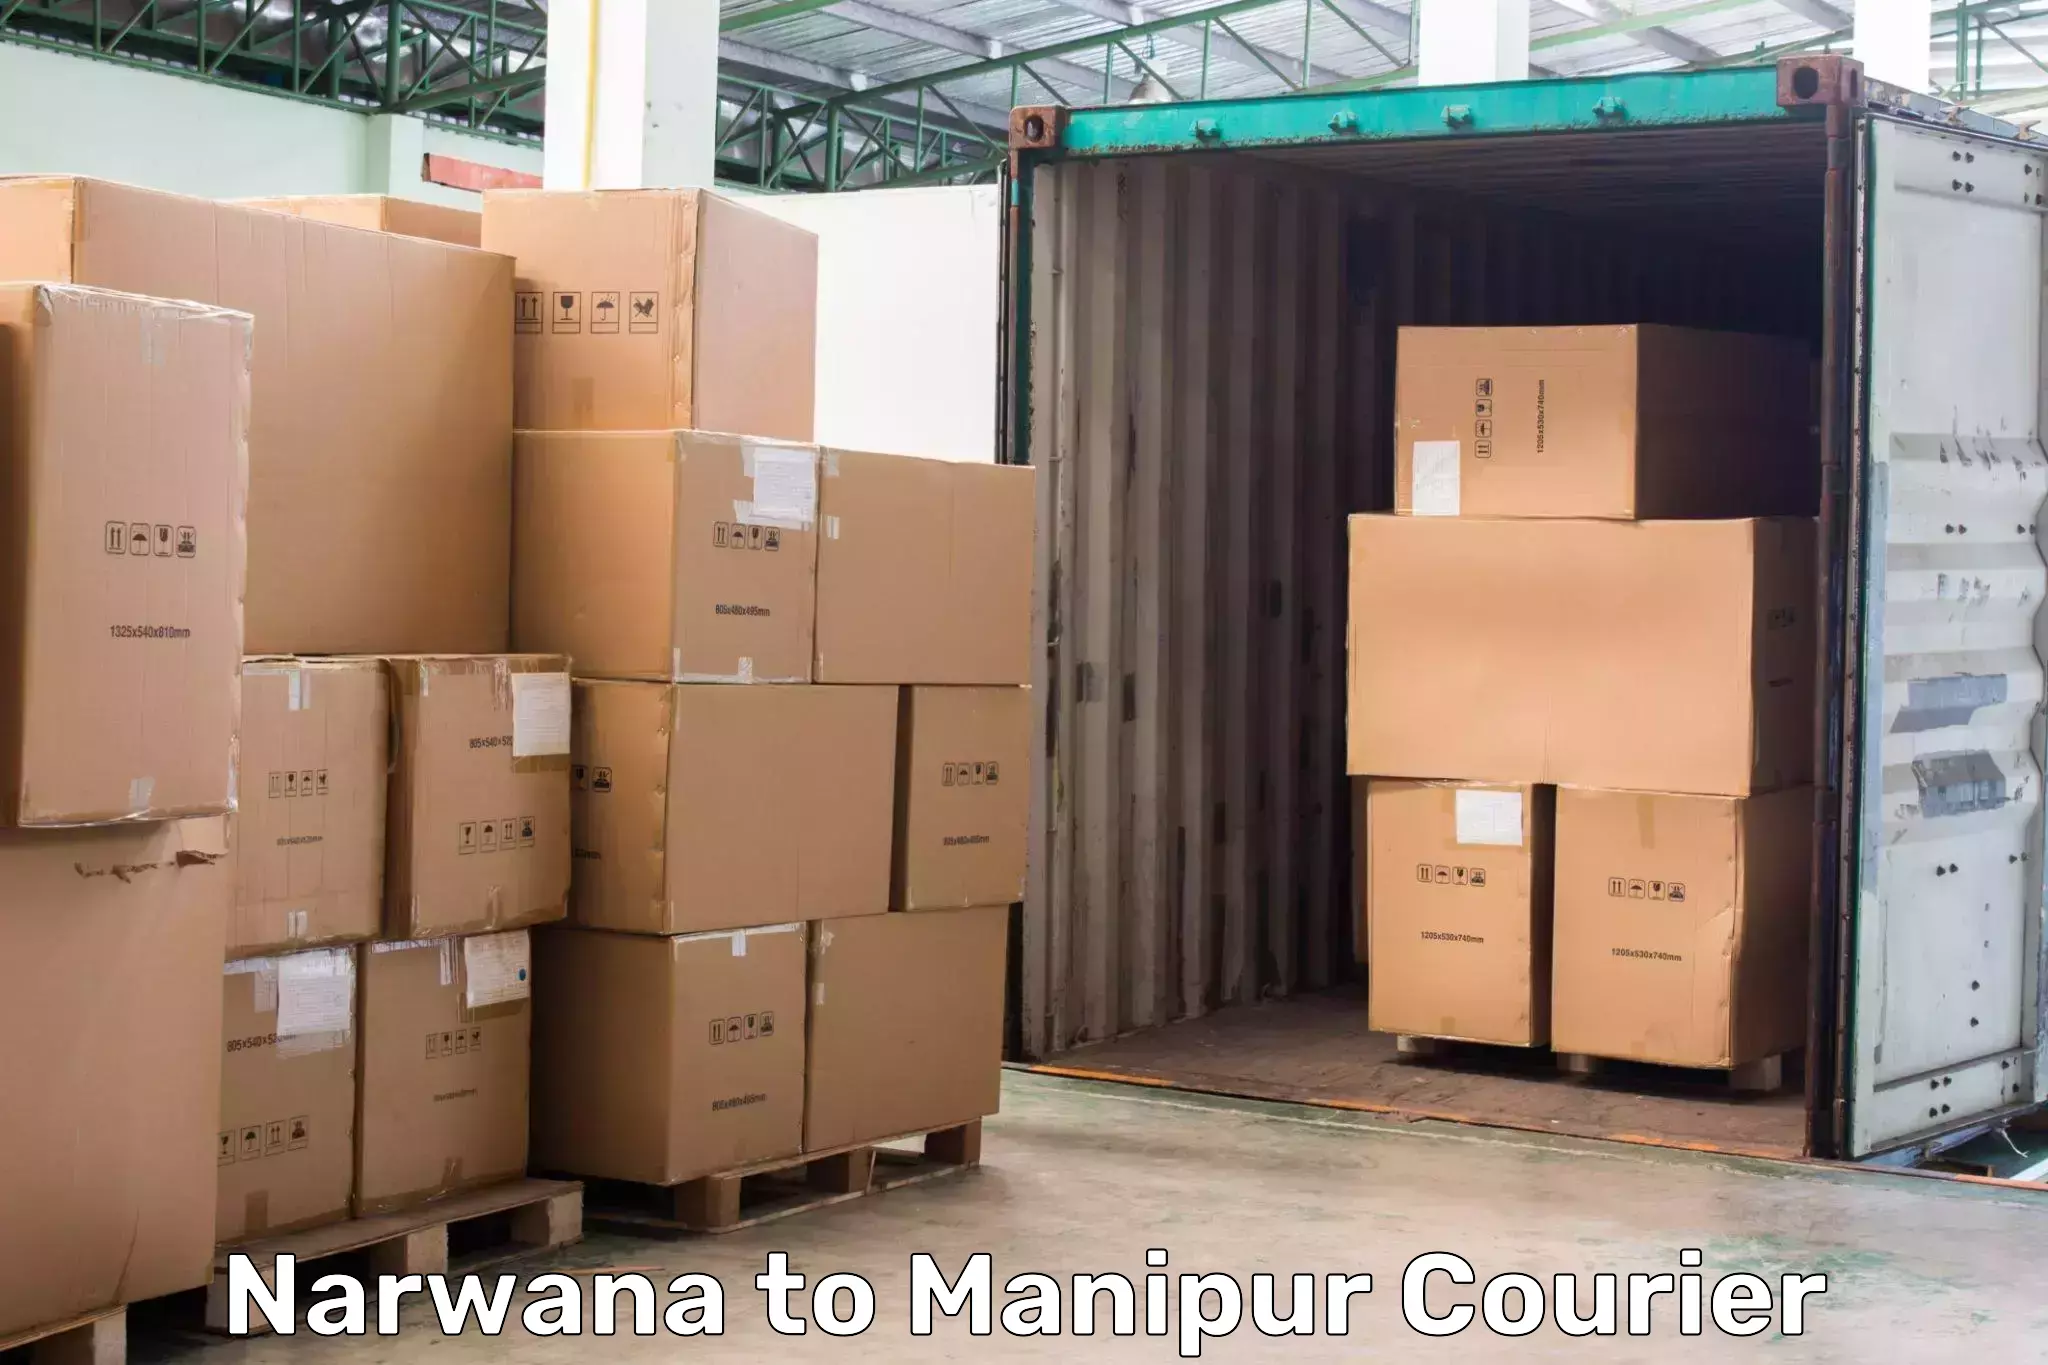 Local courier options Narwana to Jiribam